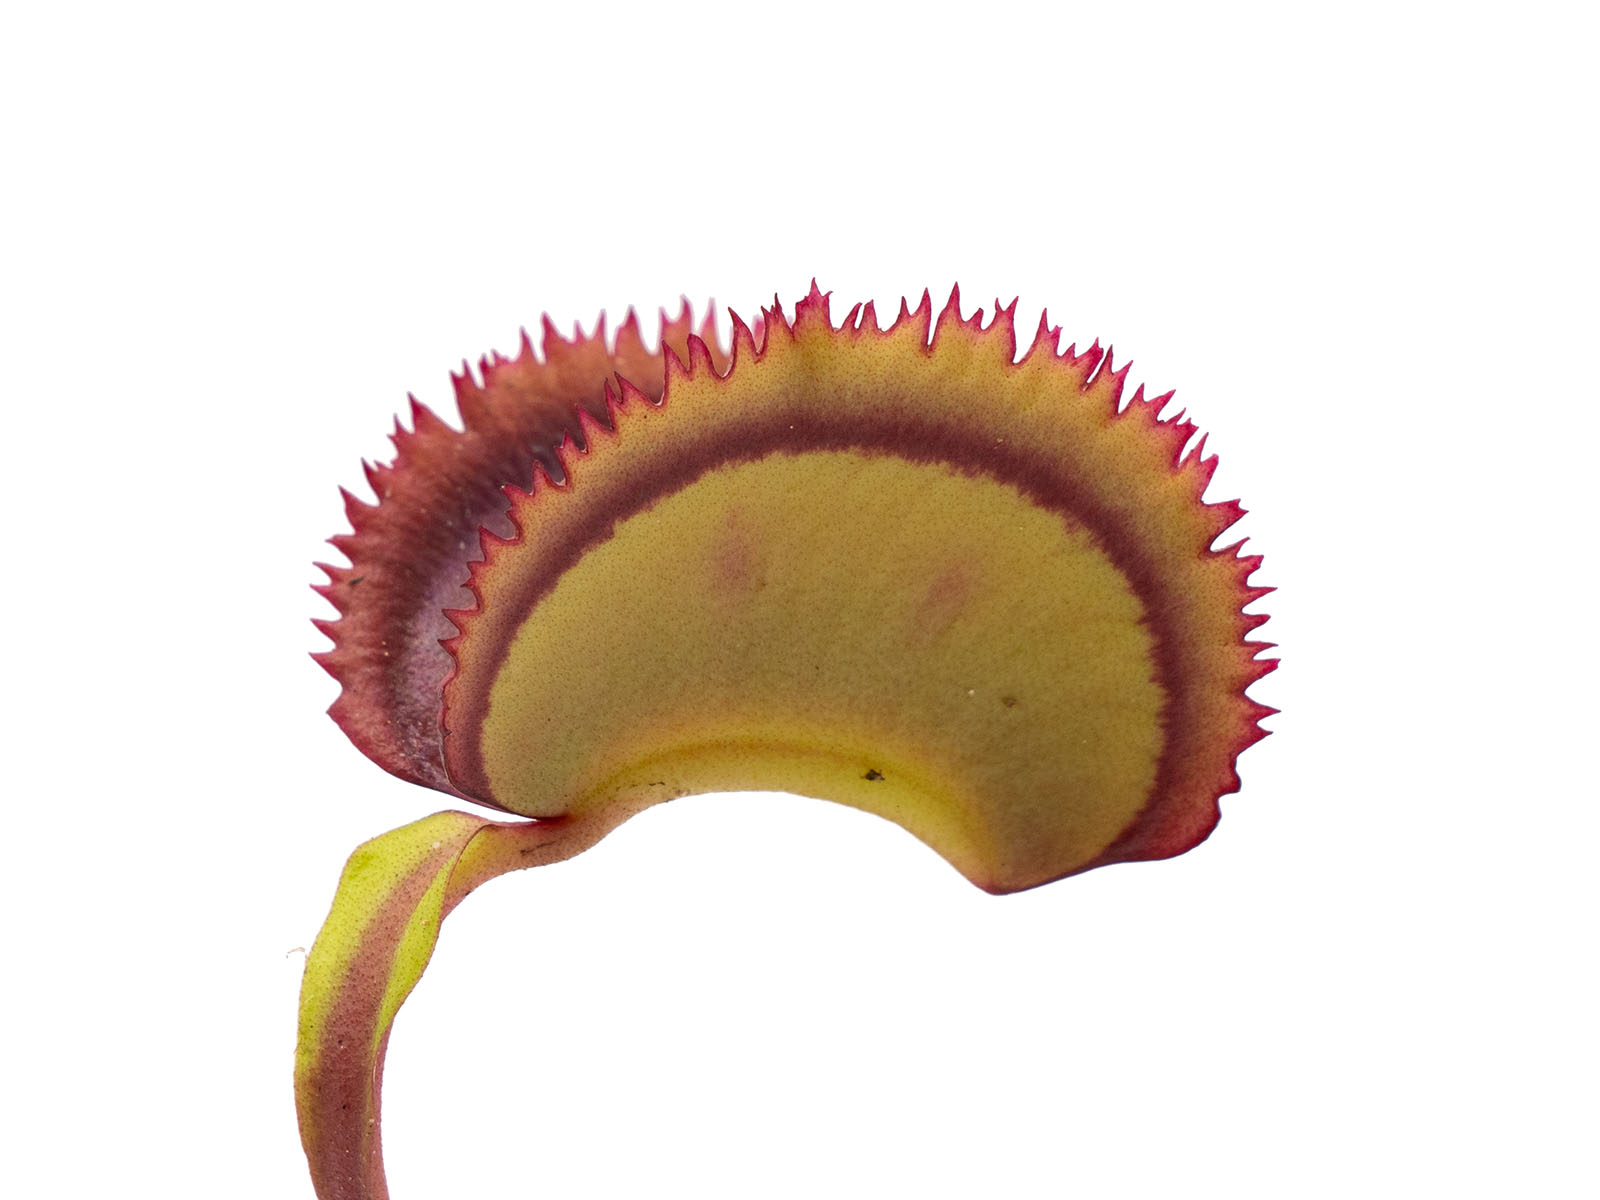 Dionaea muscipula - Giant Clam